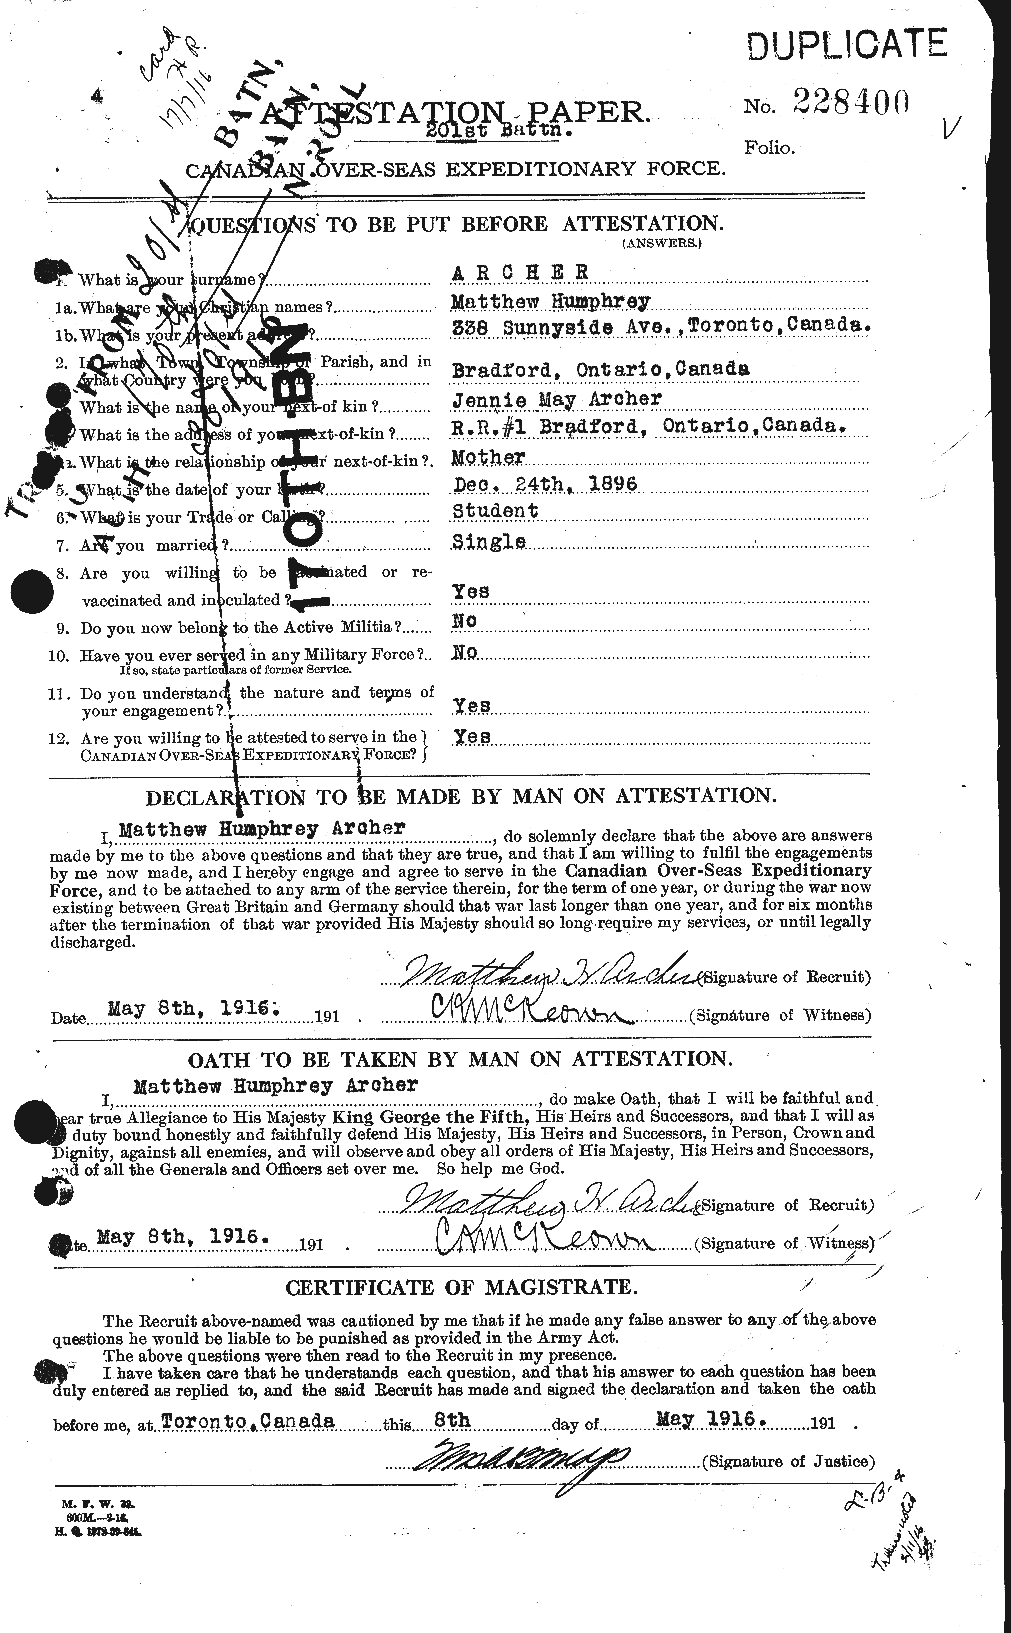 Dossiers du Personnel de la Première Guerre mondiale - CEC 211709a